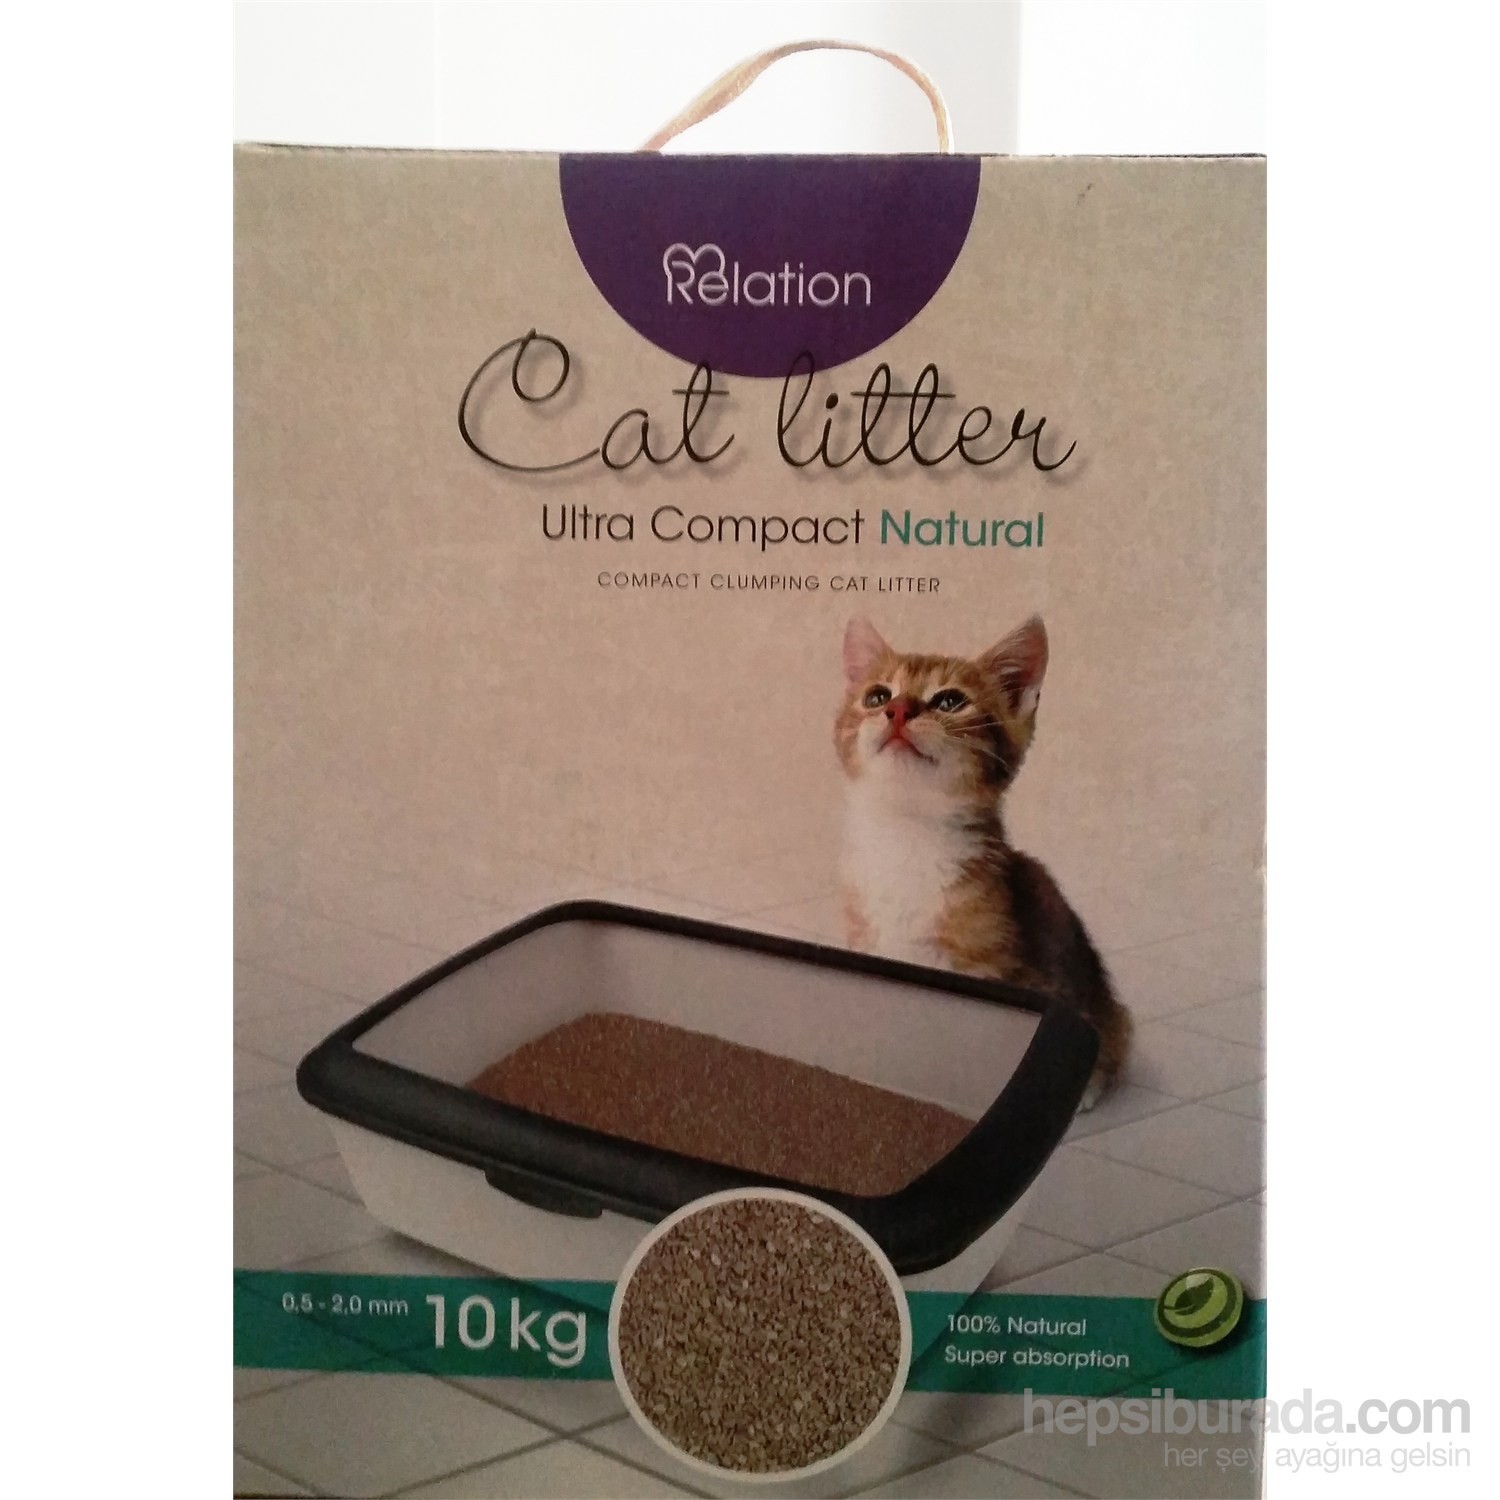 Relation Naturel Dogal Kedi Kumu Cat Litter 10 Kg Fiyatı